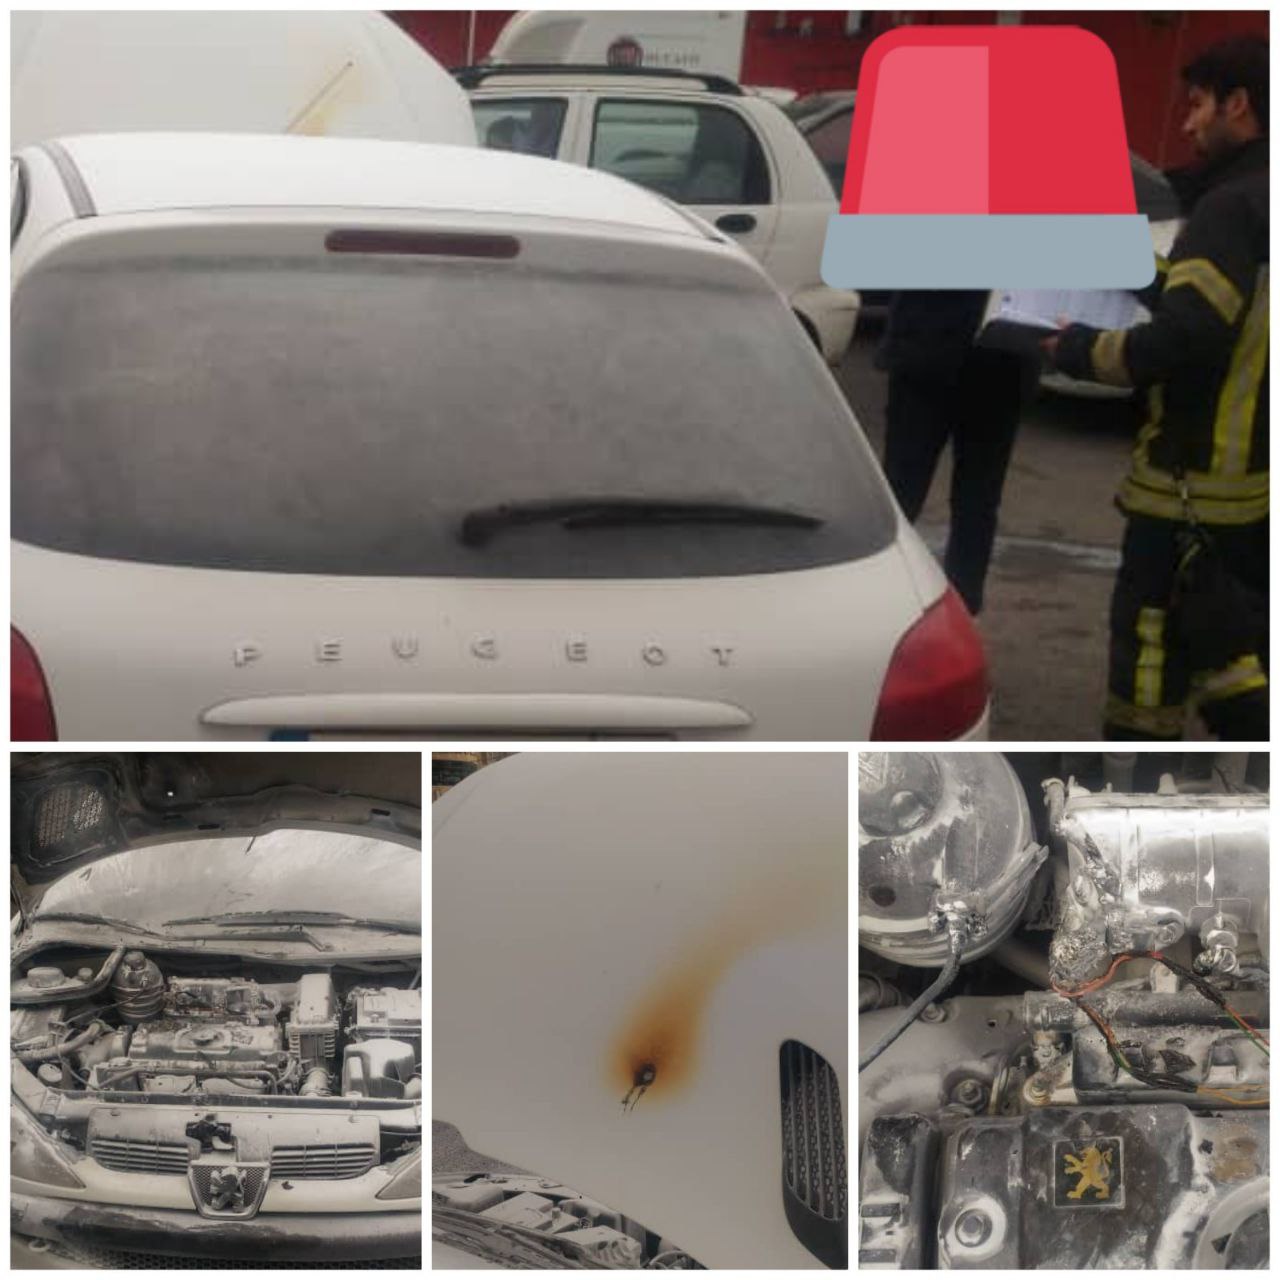 آتش سوزی خودروی سواری در میدان سرگل رشت/ اقدام آگاهانه شهروندان کارساز شد